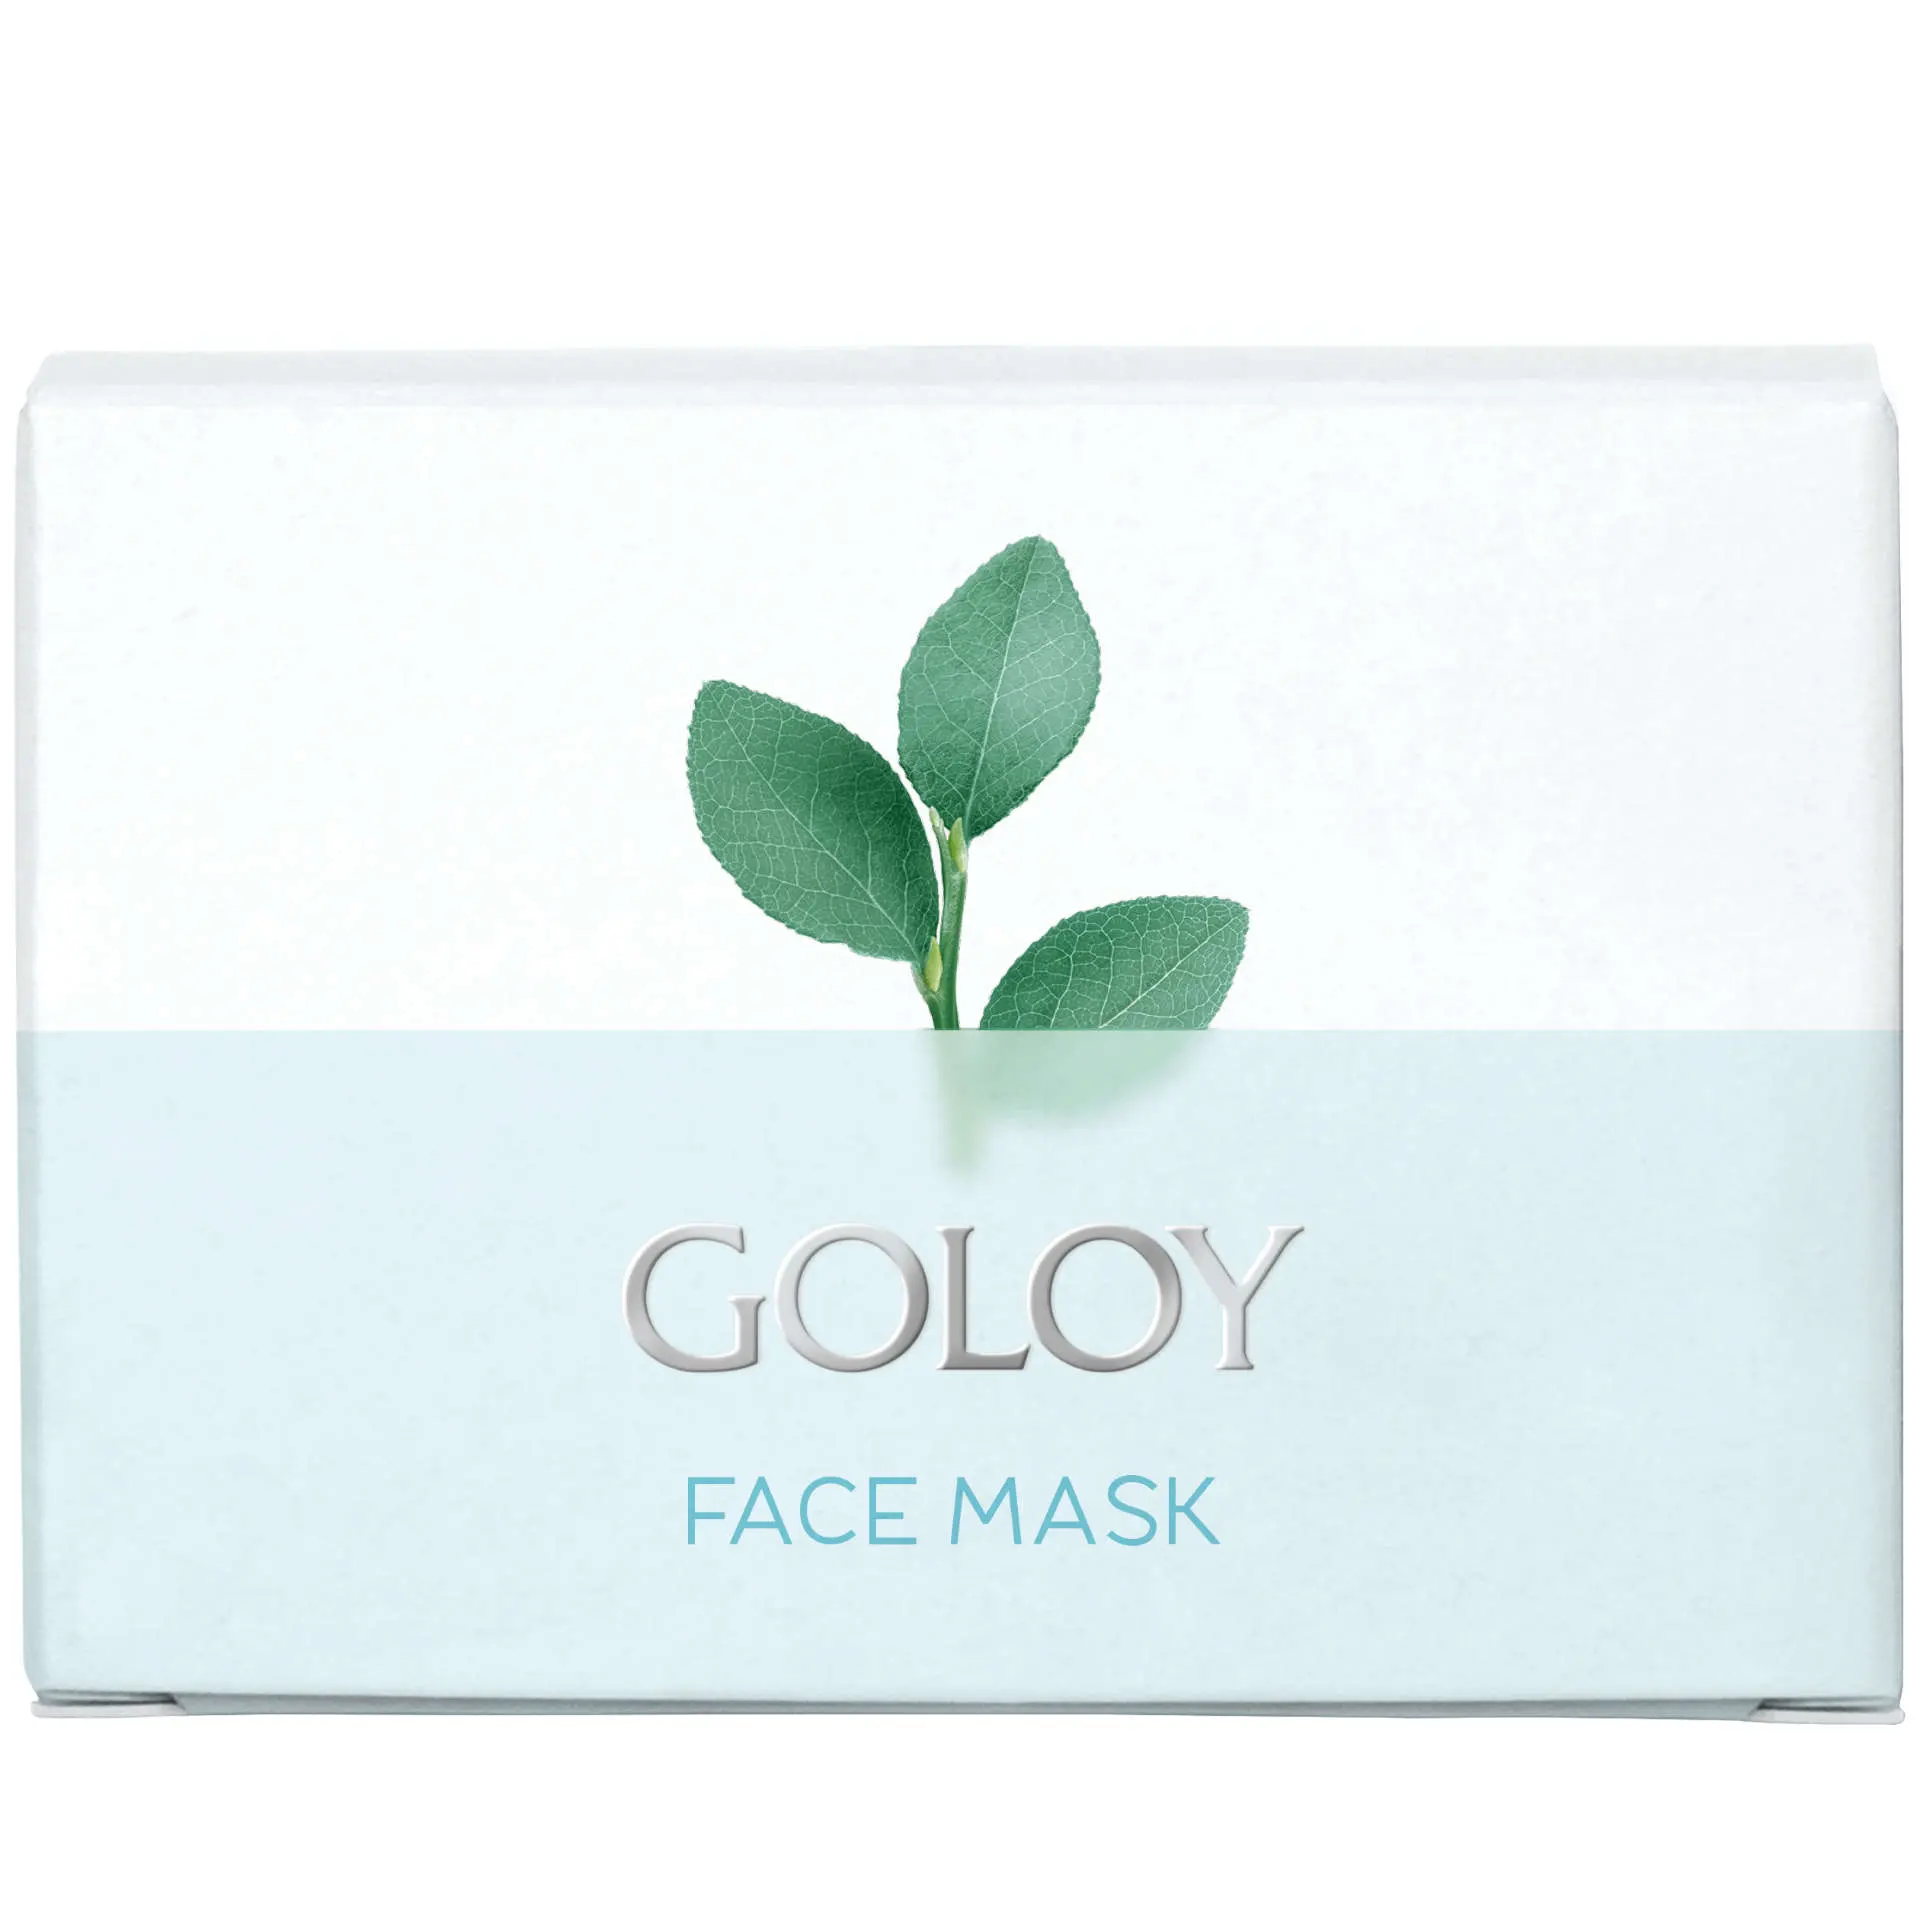 Goloy Face Mask